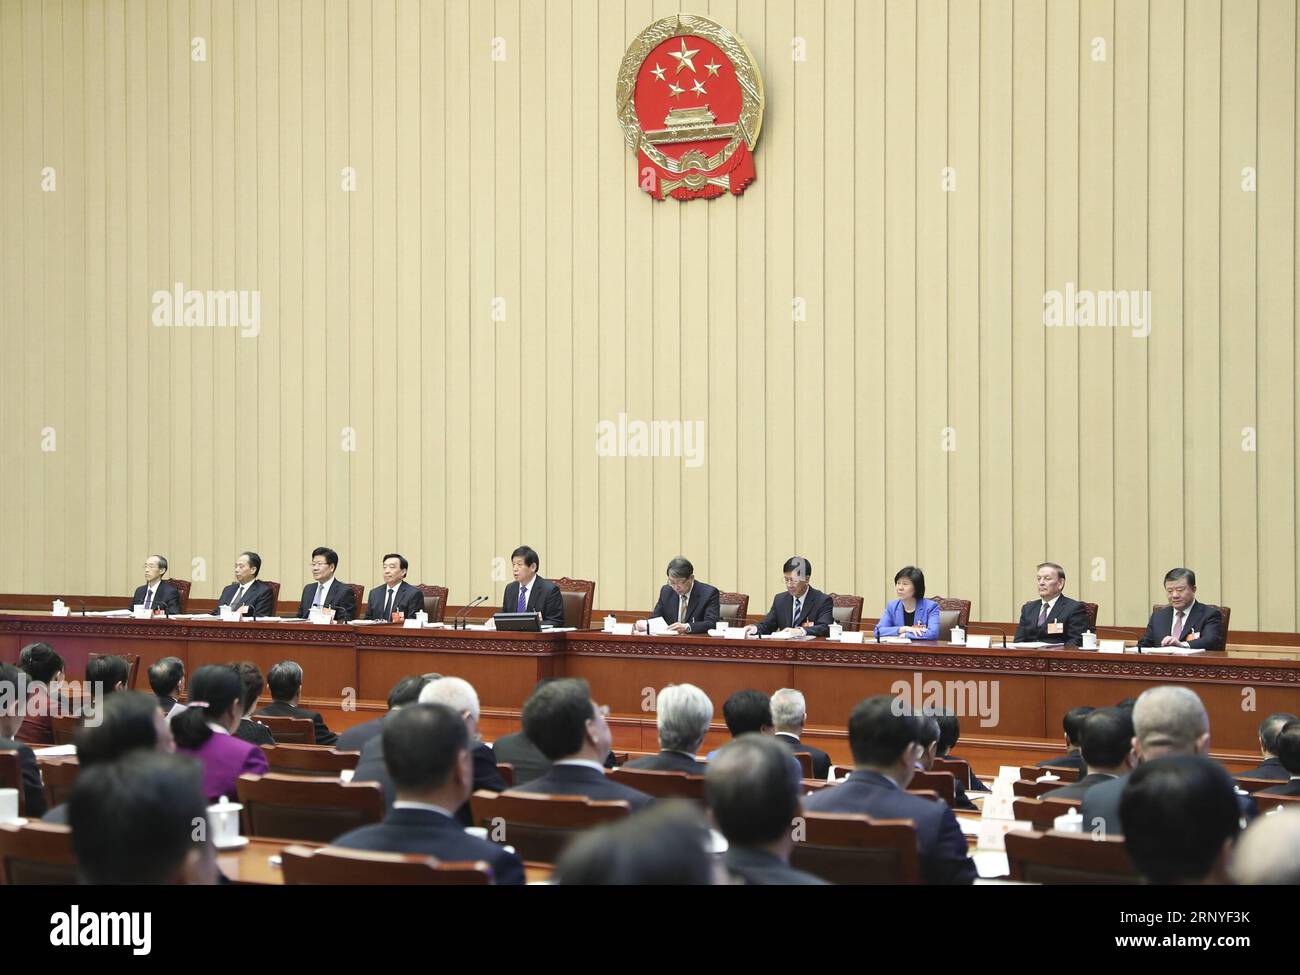 (180316) -- PEKING, 16. März 2018 -- Li Zhanshu, Exekutivvorsitzender des Präsidiums der ersten Sitzung des 13. Nationalen Volkskongresses (NPC), leitet die sechste Präsidiumssitzung in der Großen Halle des Volkes in Peking, der Hauptstadt Chinas, am 16. März 2018. ) (ZWEI SITZUNGEN)CHINA-BEIJING-NPC-PRESIDIUM-MEETING (CN) XIEXHUANCHI PUBLICATIONXNOTXINXCHN Stockfoto